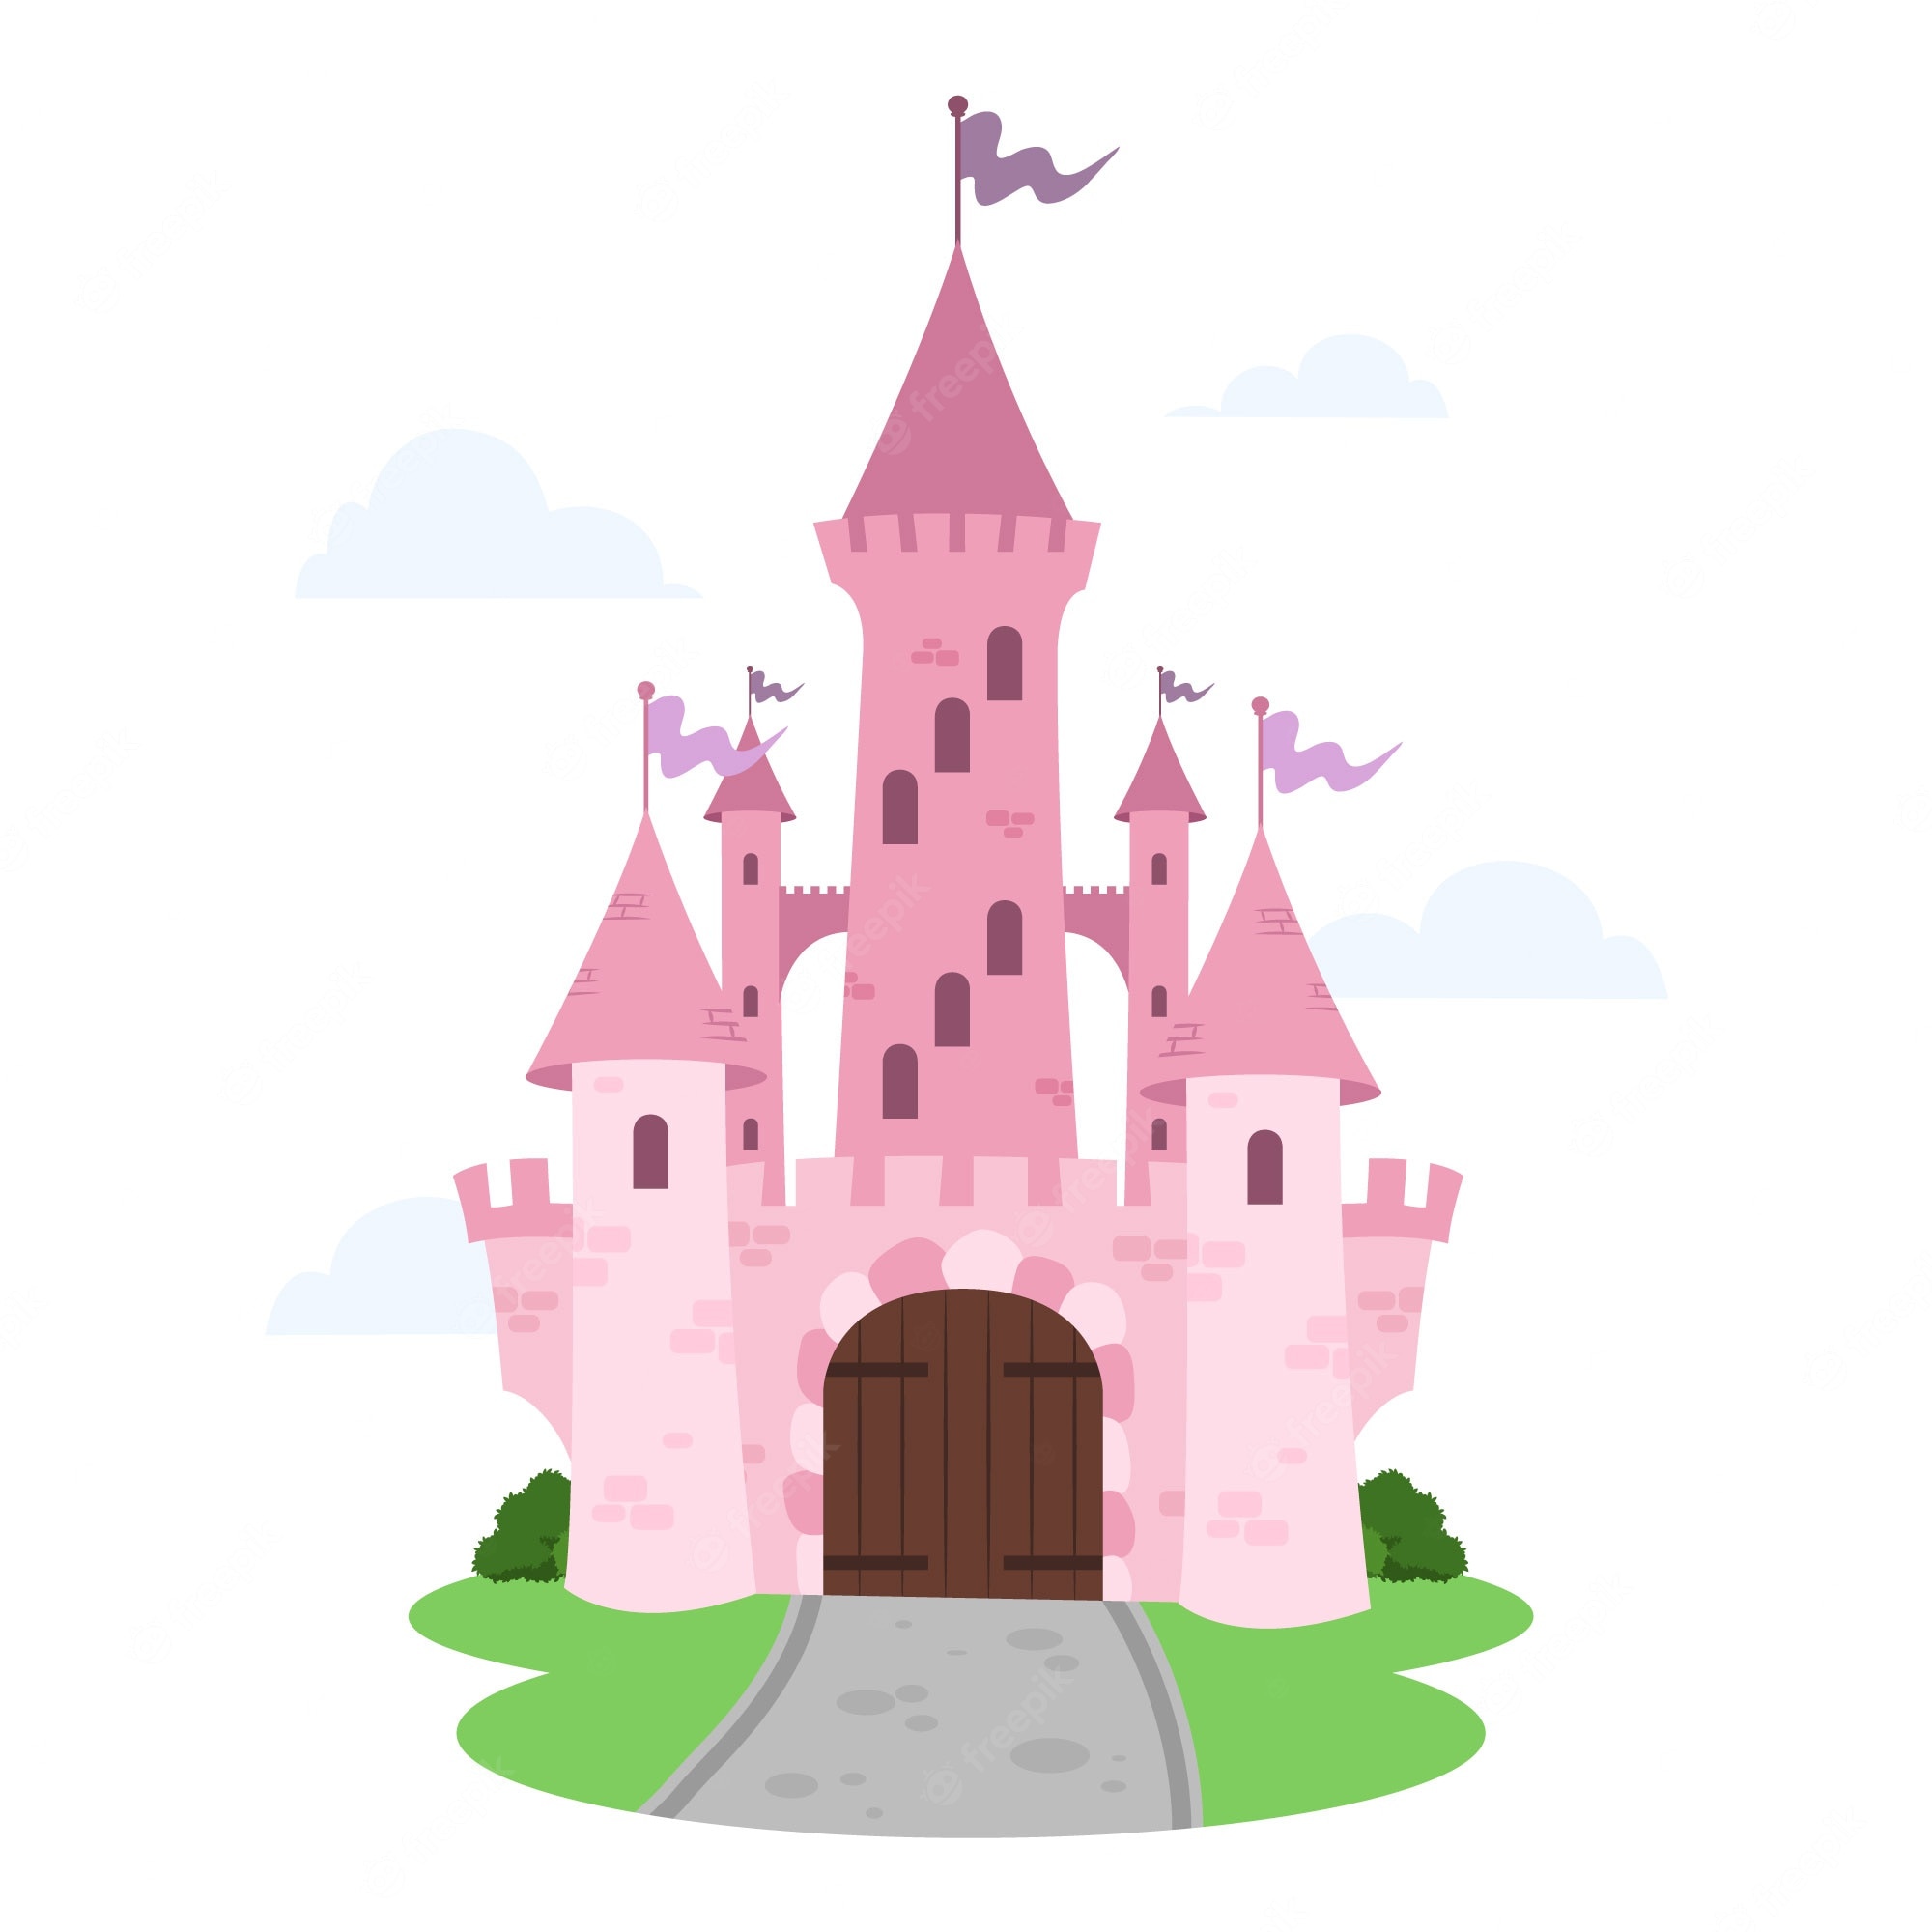 Fantasy castle Image. Free Vectors, & PSD